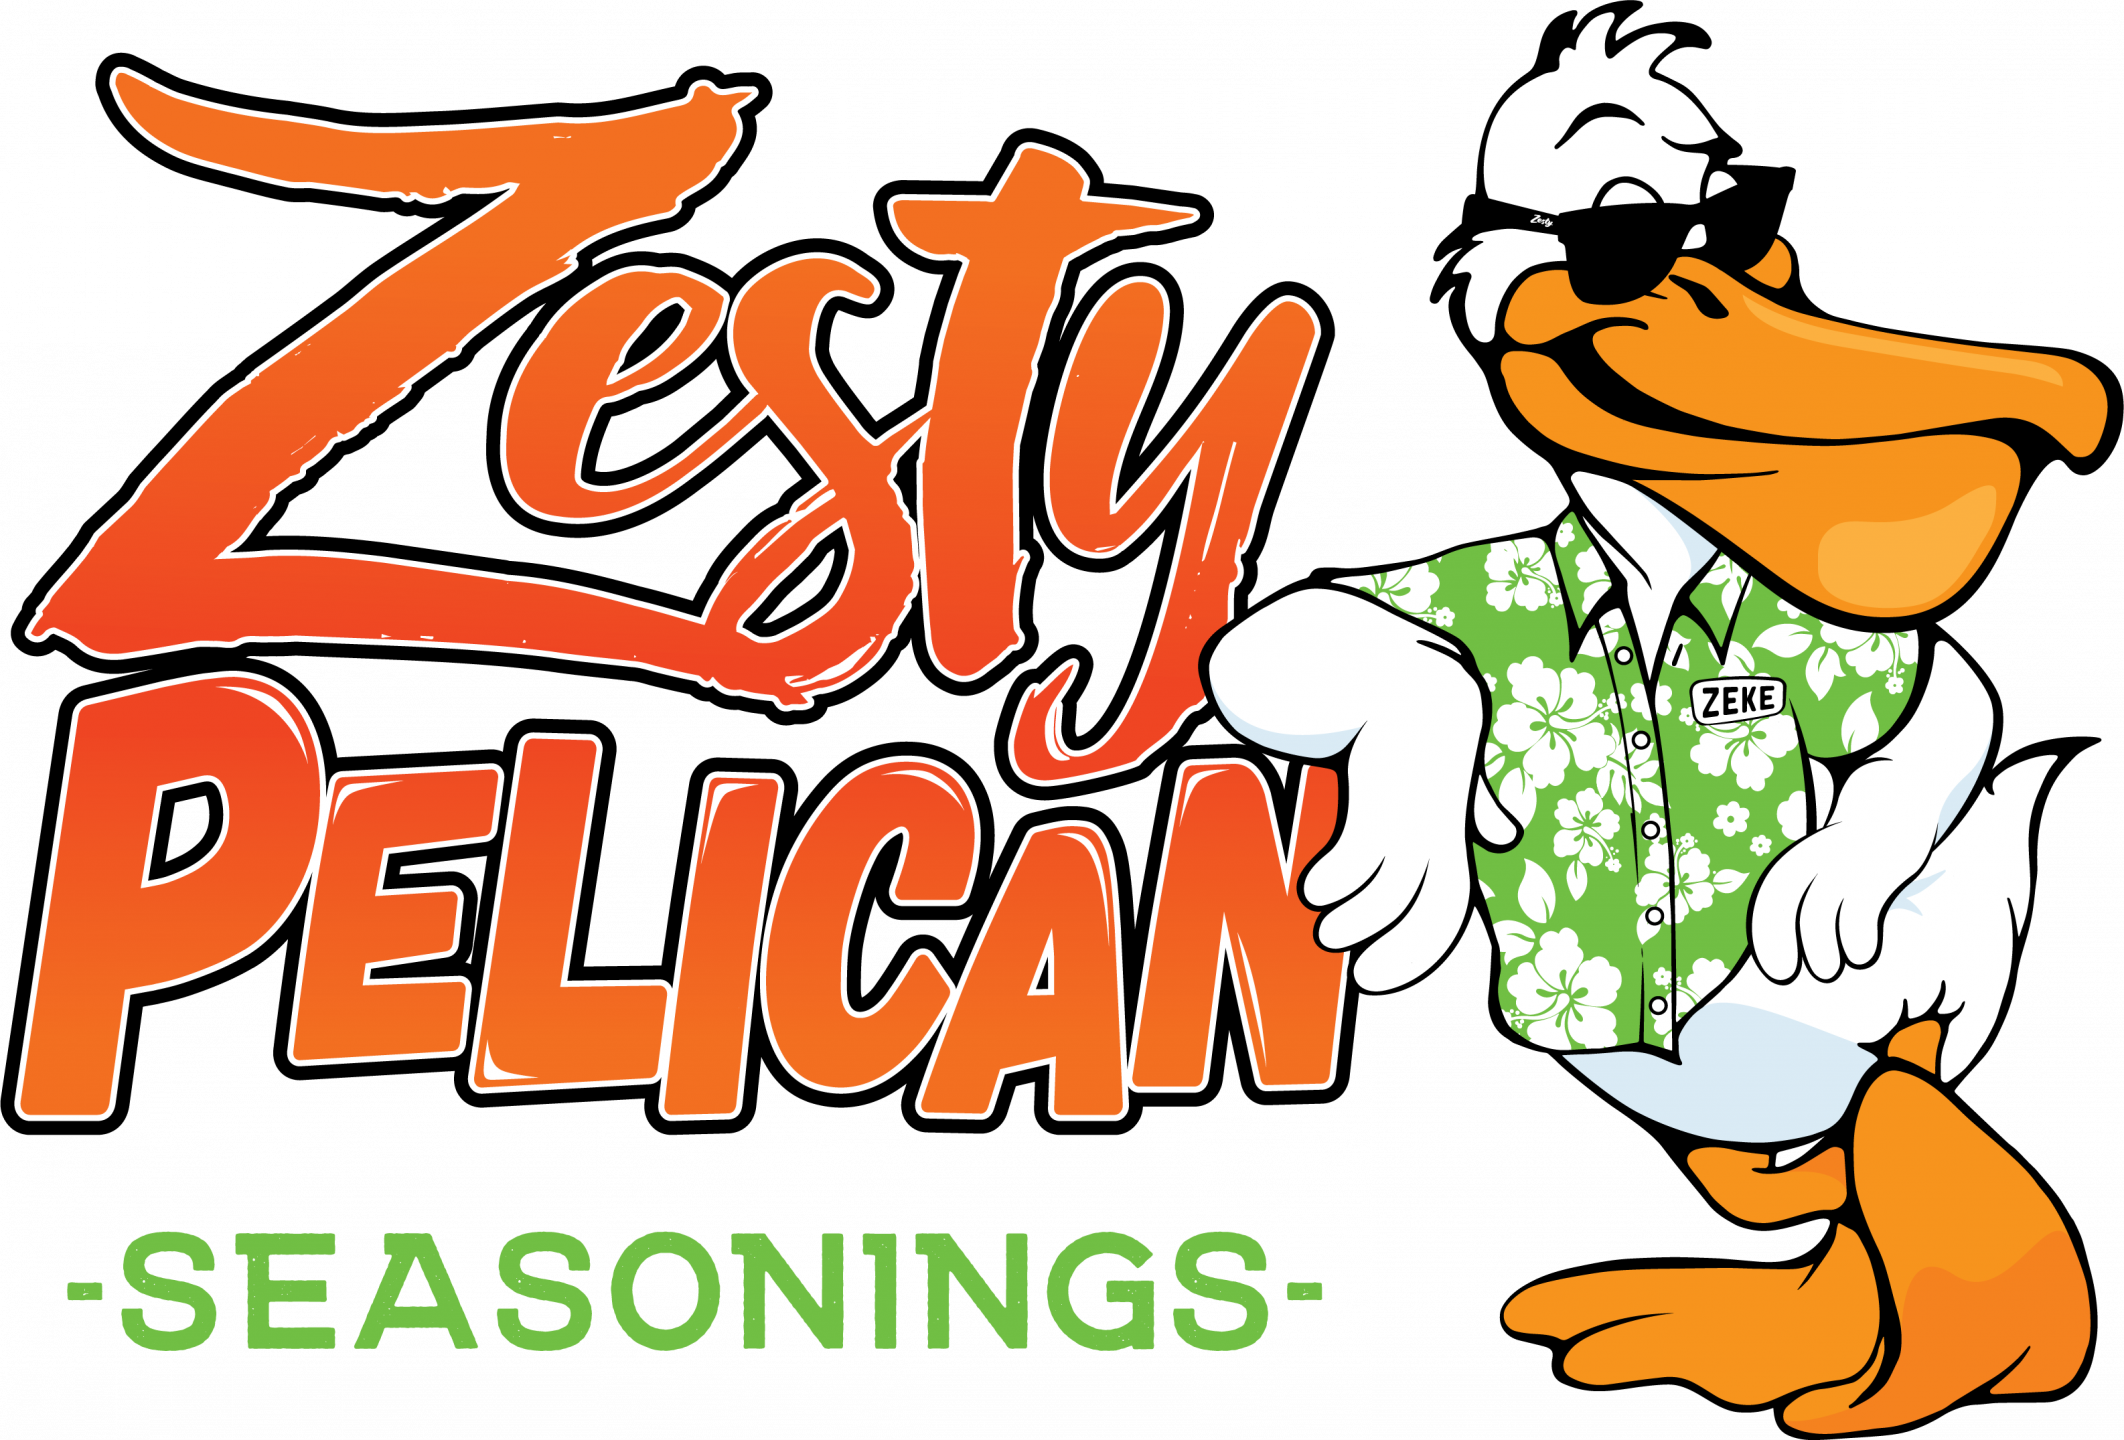 Zesty Pelican Seasoning